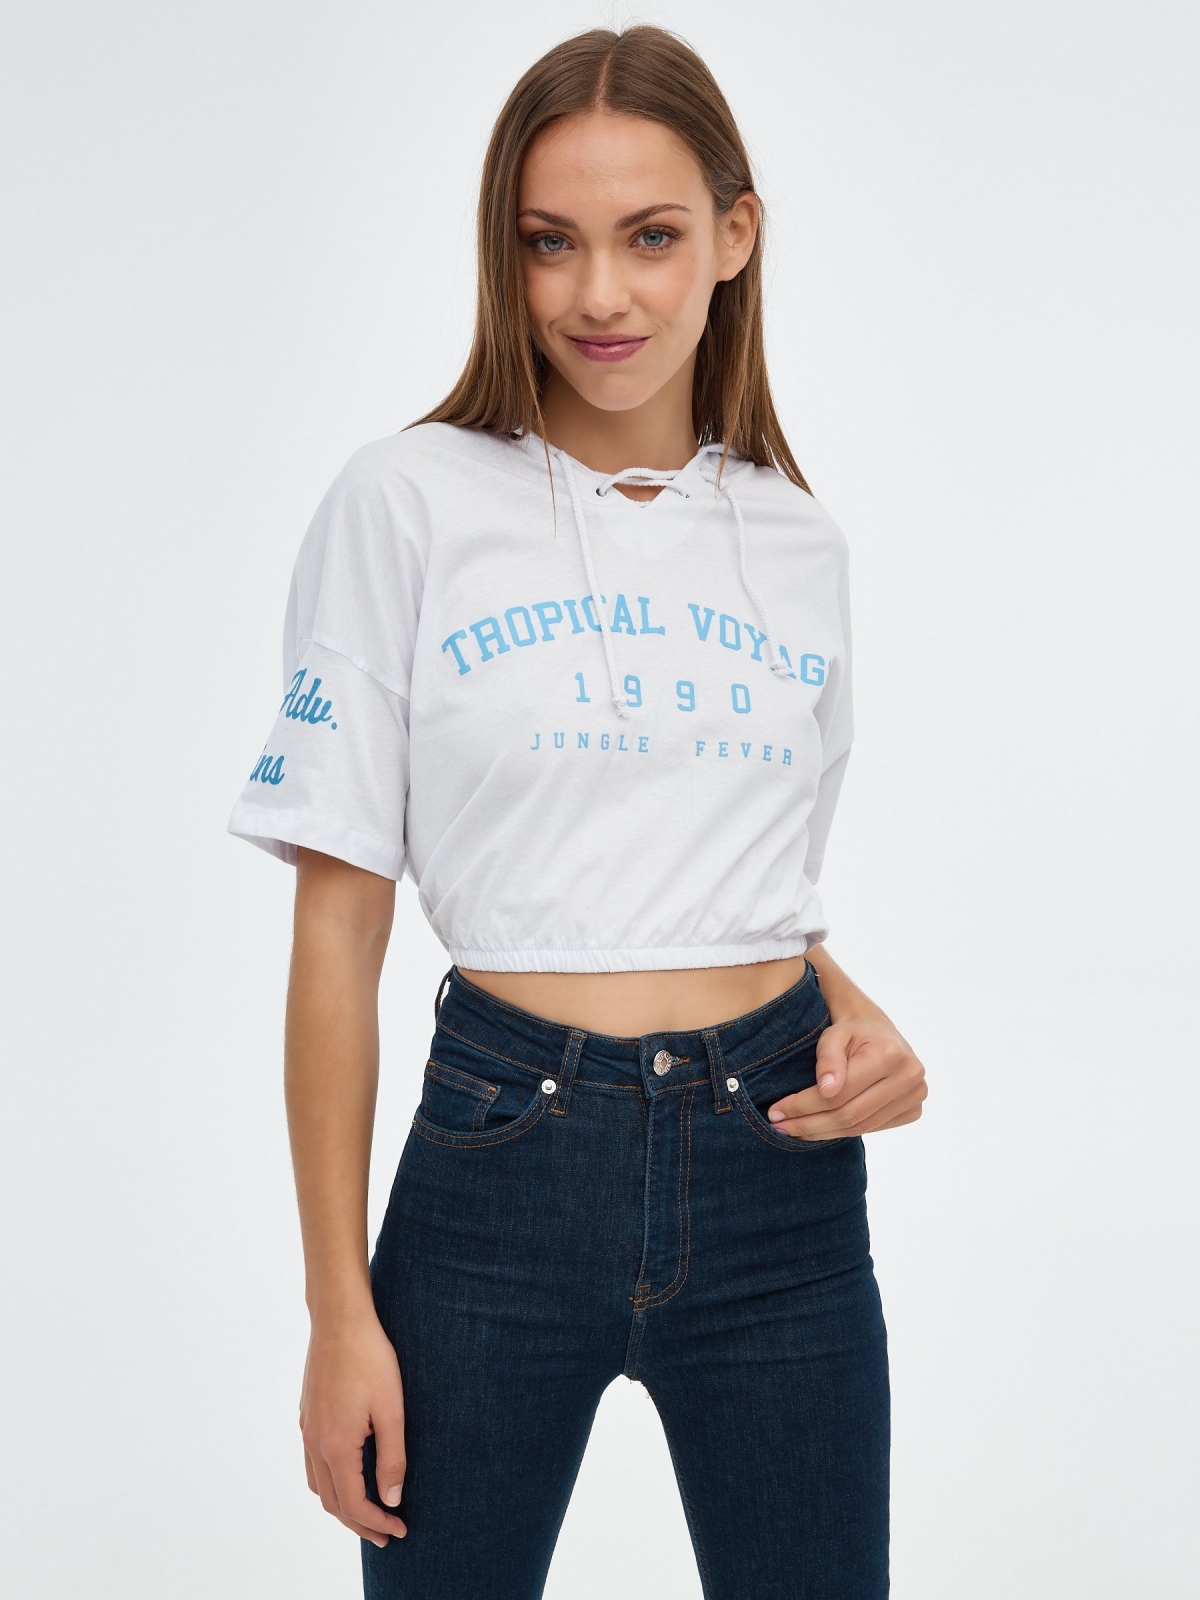 Camiseta Tropical Voyage con capucha blanco vista media frontal